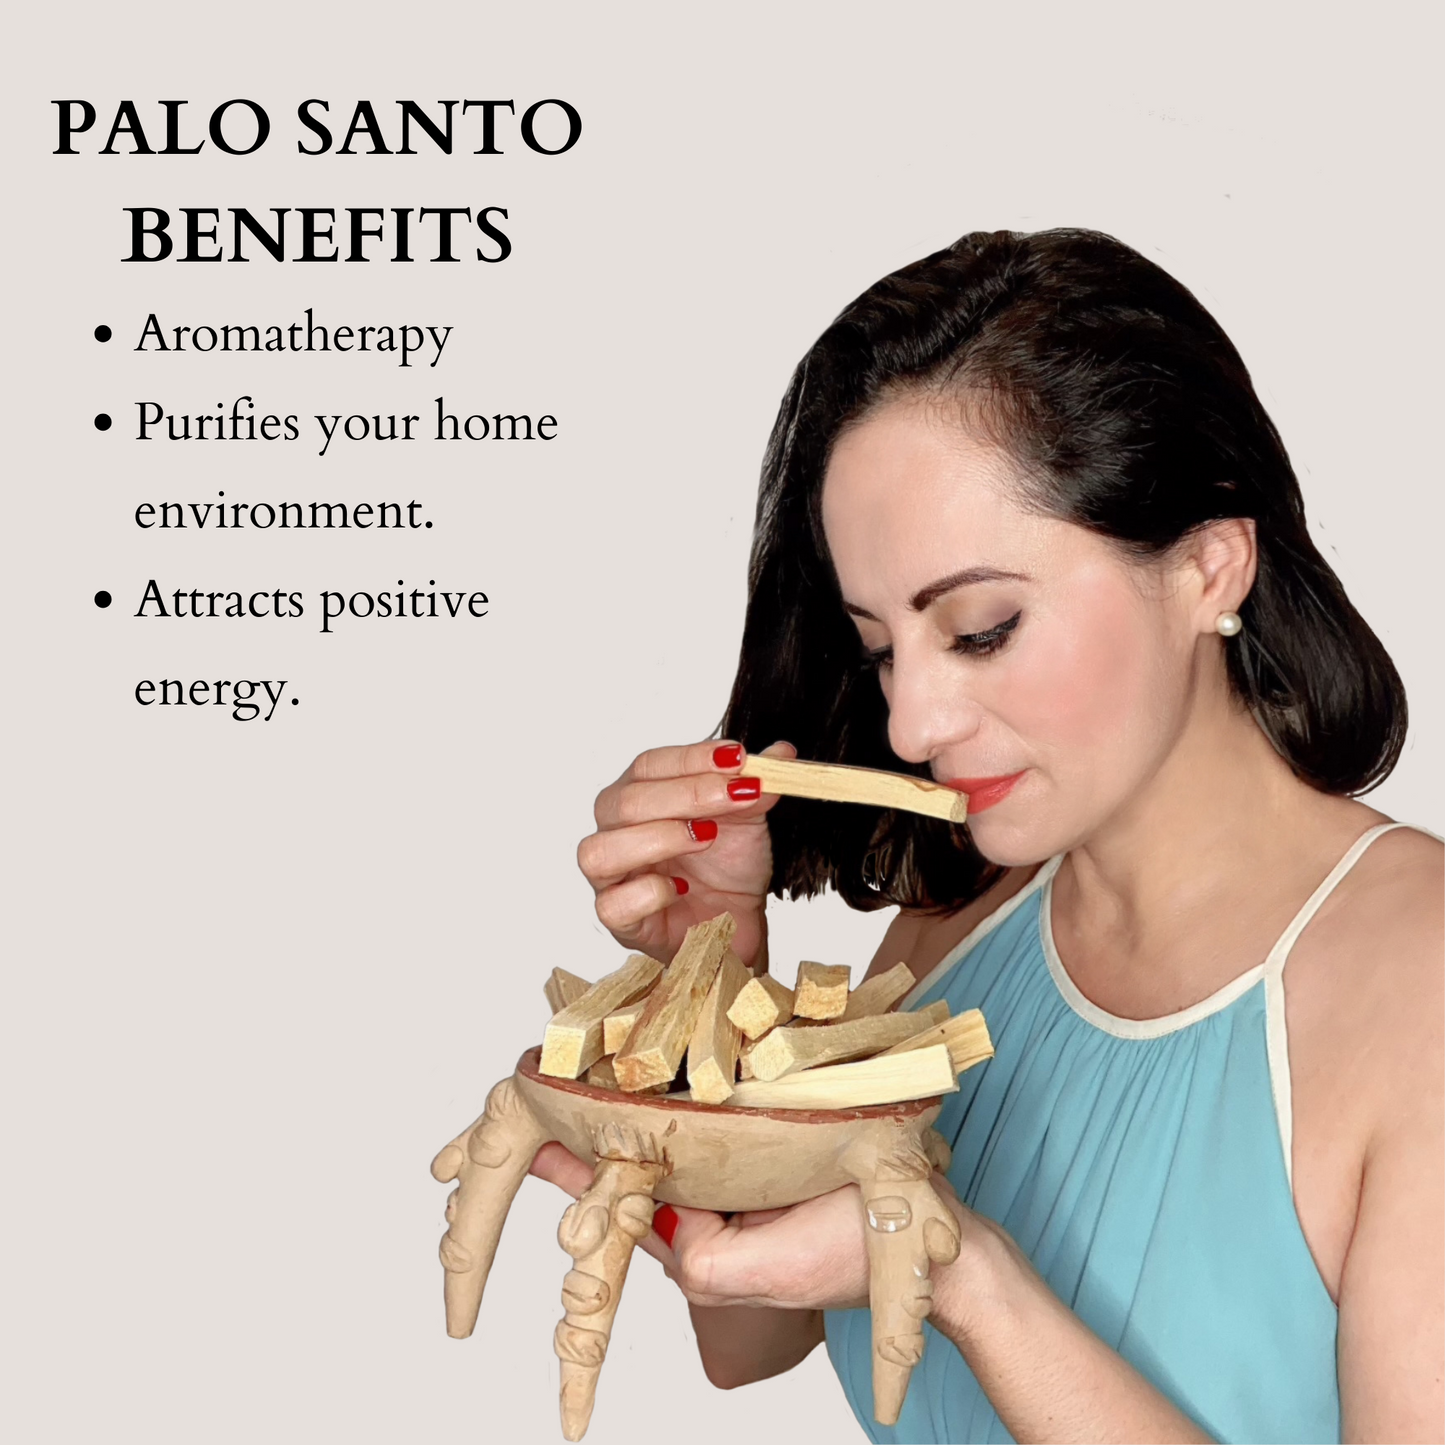 Premium Palo Santo Sticks from Ecuador